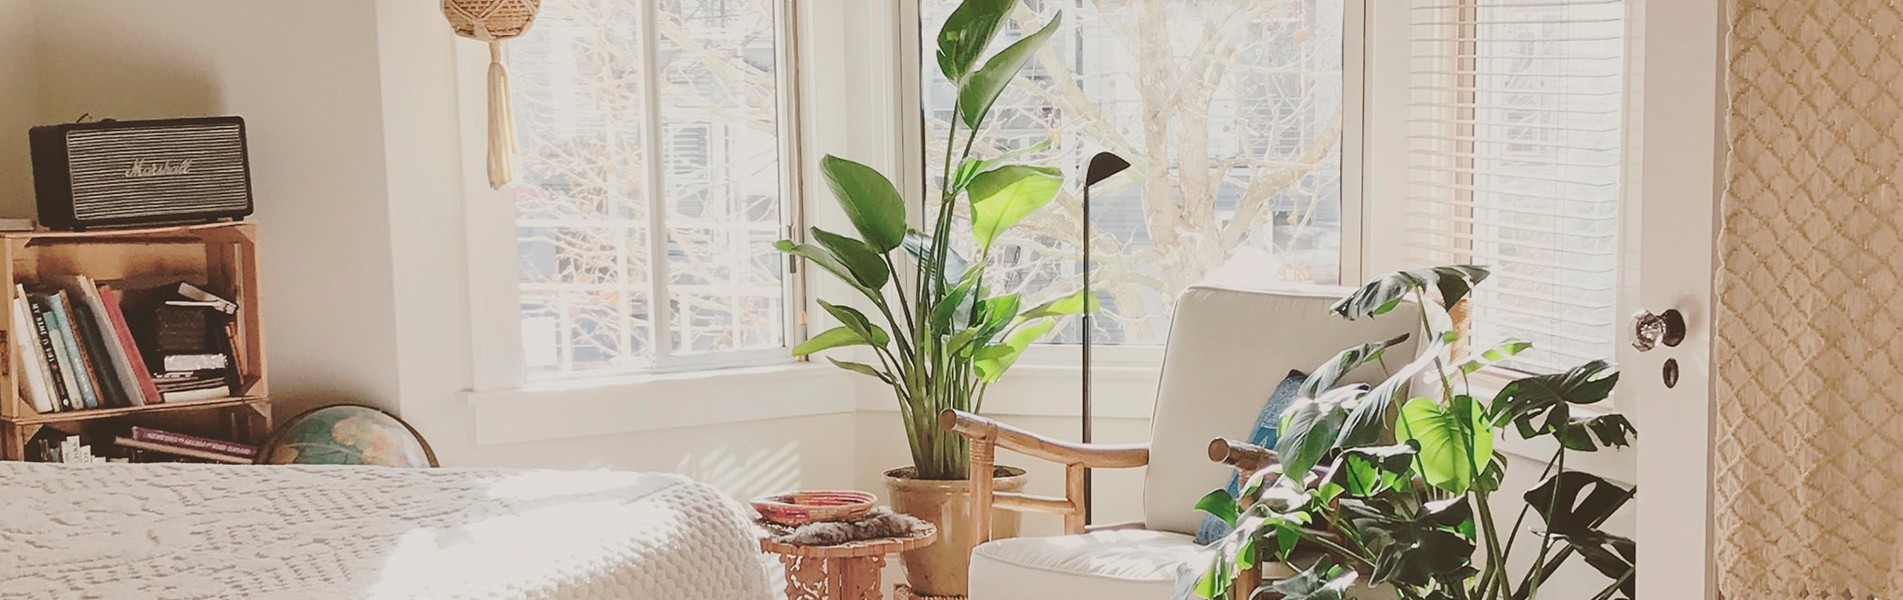 Ambiance relaxante dans la chambre grâce aux plantes